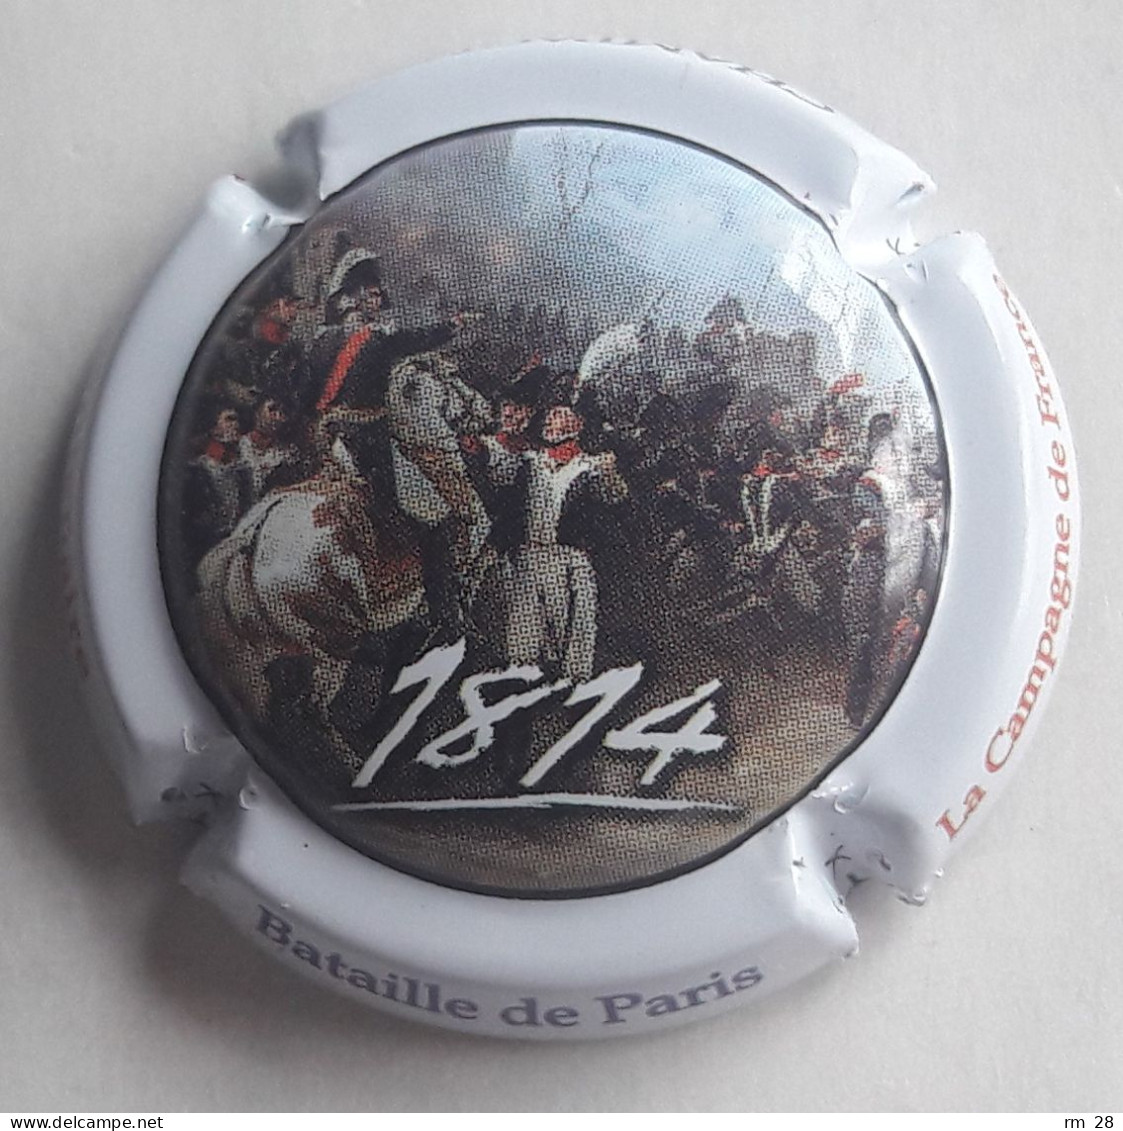 Génériques Napoléon bicentenaire de la campagne de France : 12 capsules n° 902 à 902.k (BE/TBE) série complète